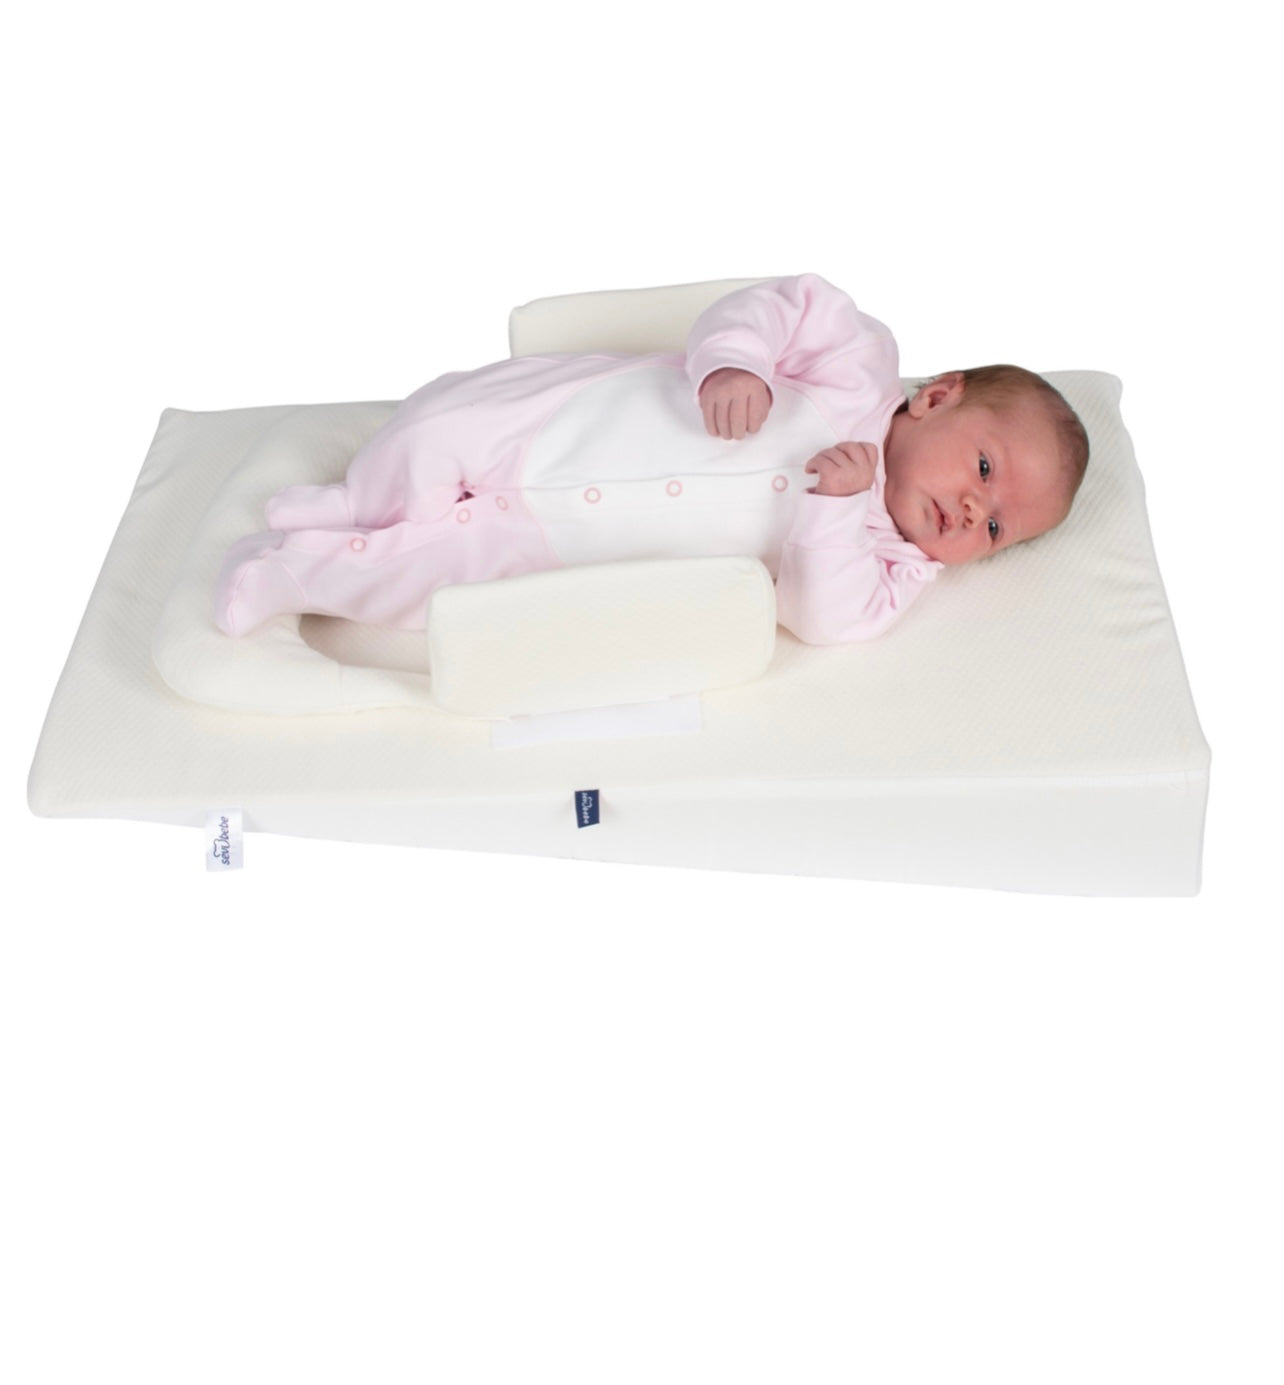 Infant Reflux Bed